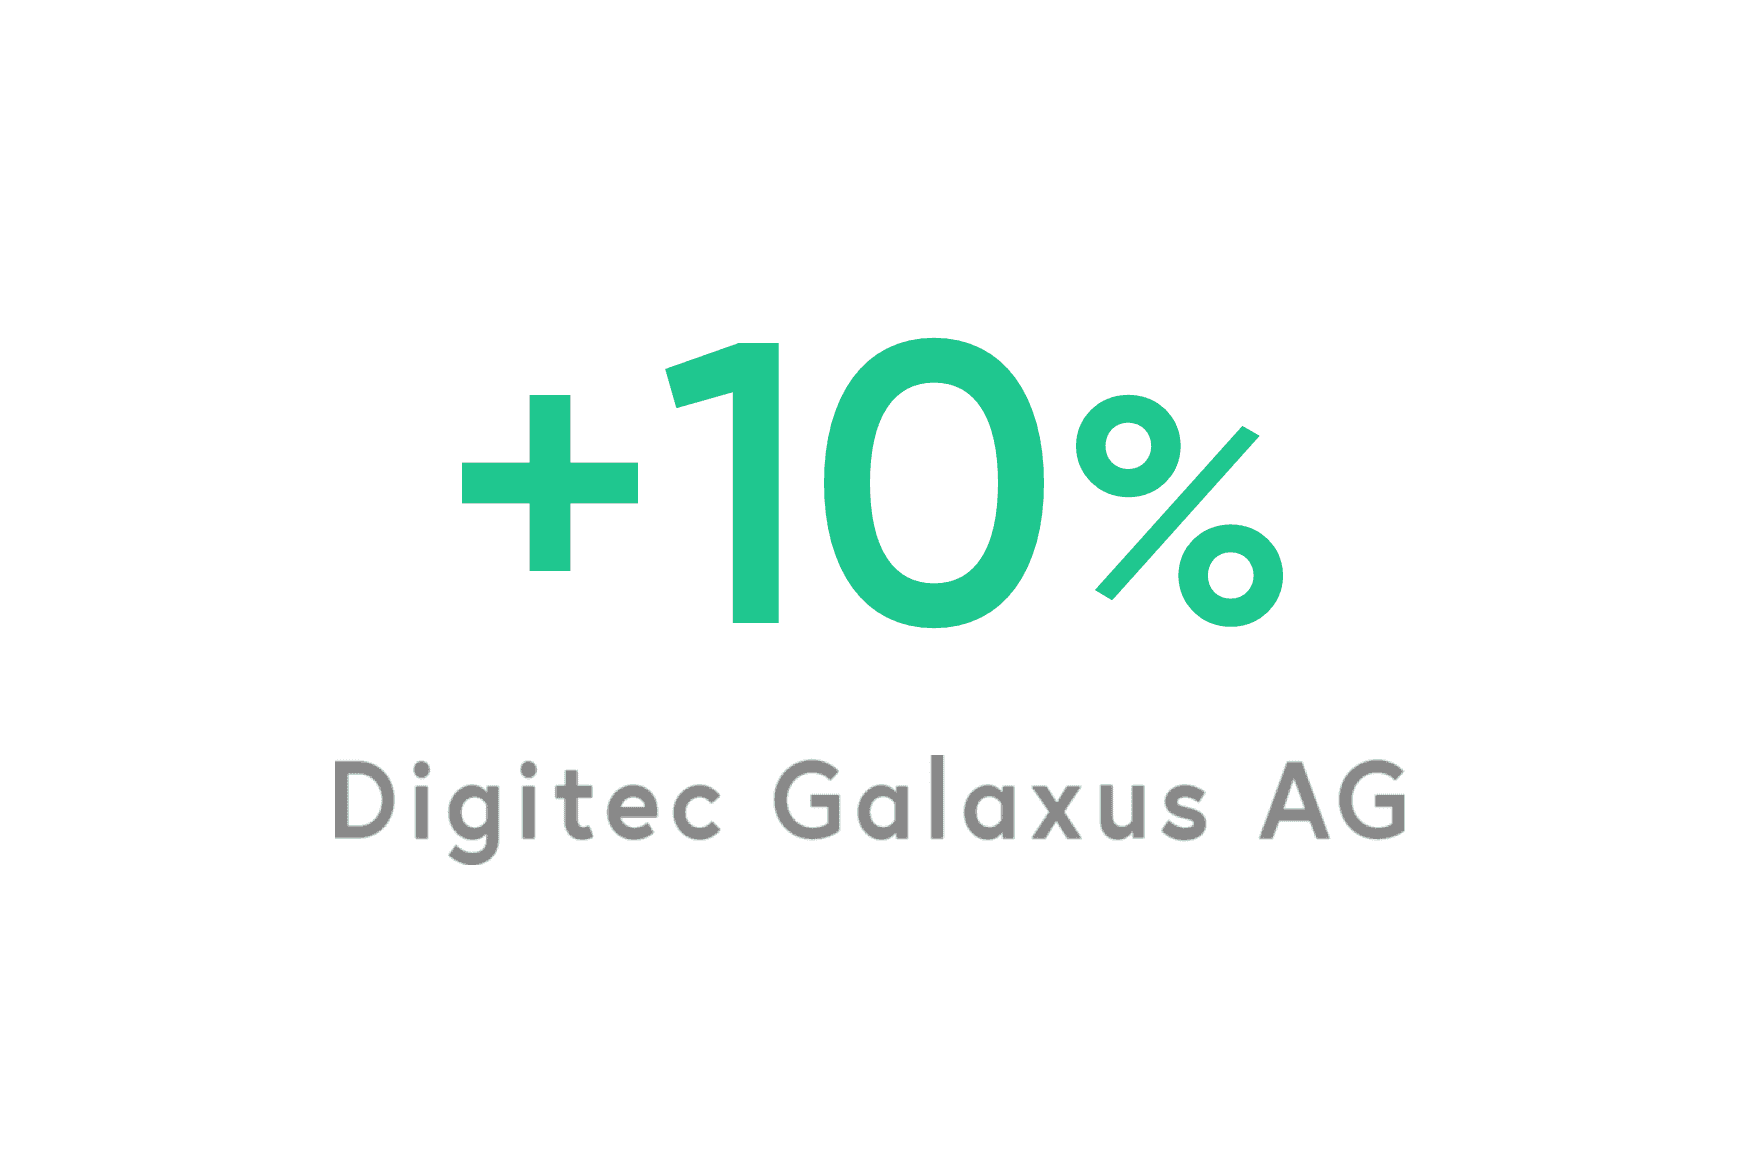 Digitec Galaxus : 10 % d'amélioration du moral des téléconseillers